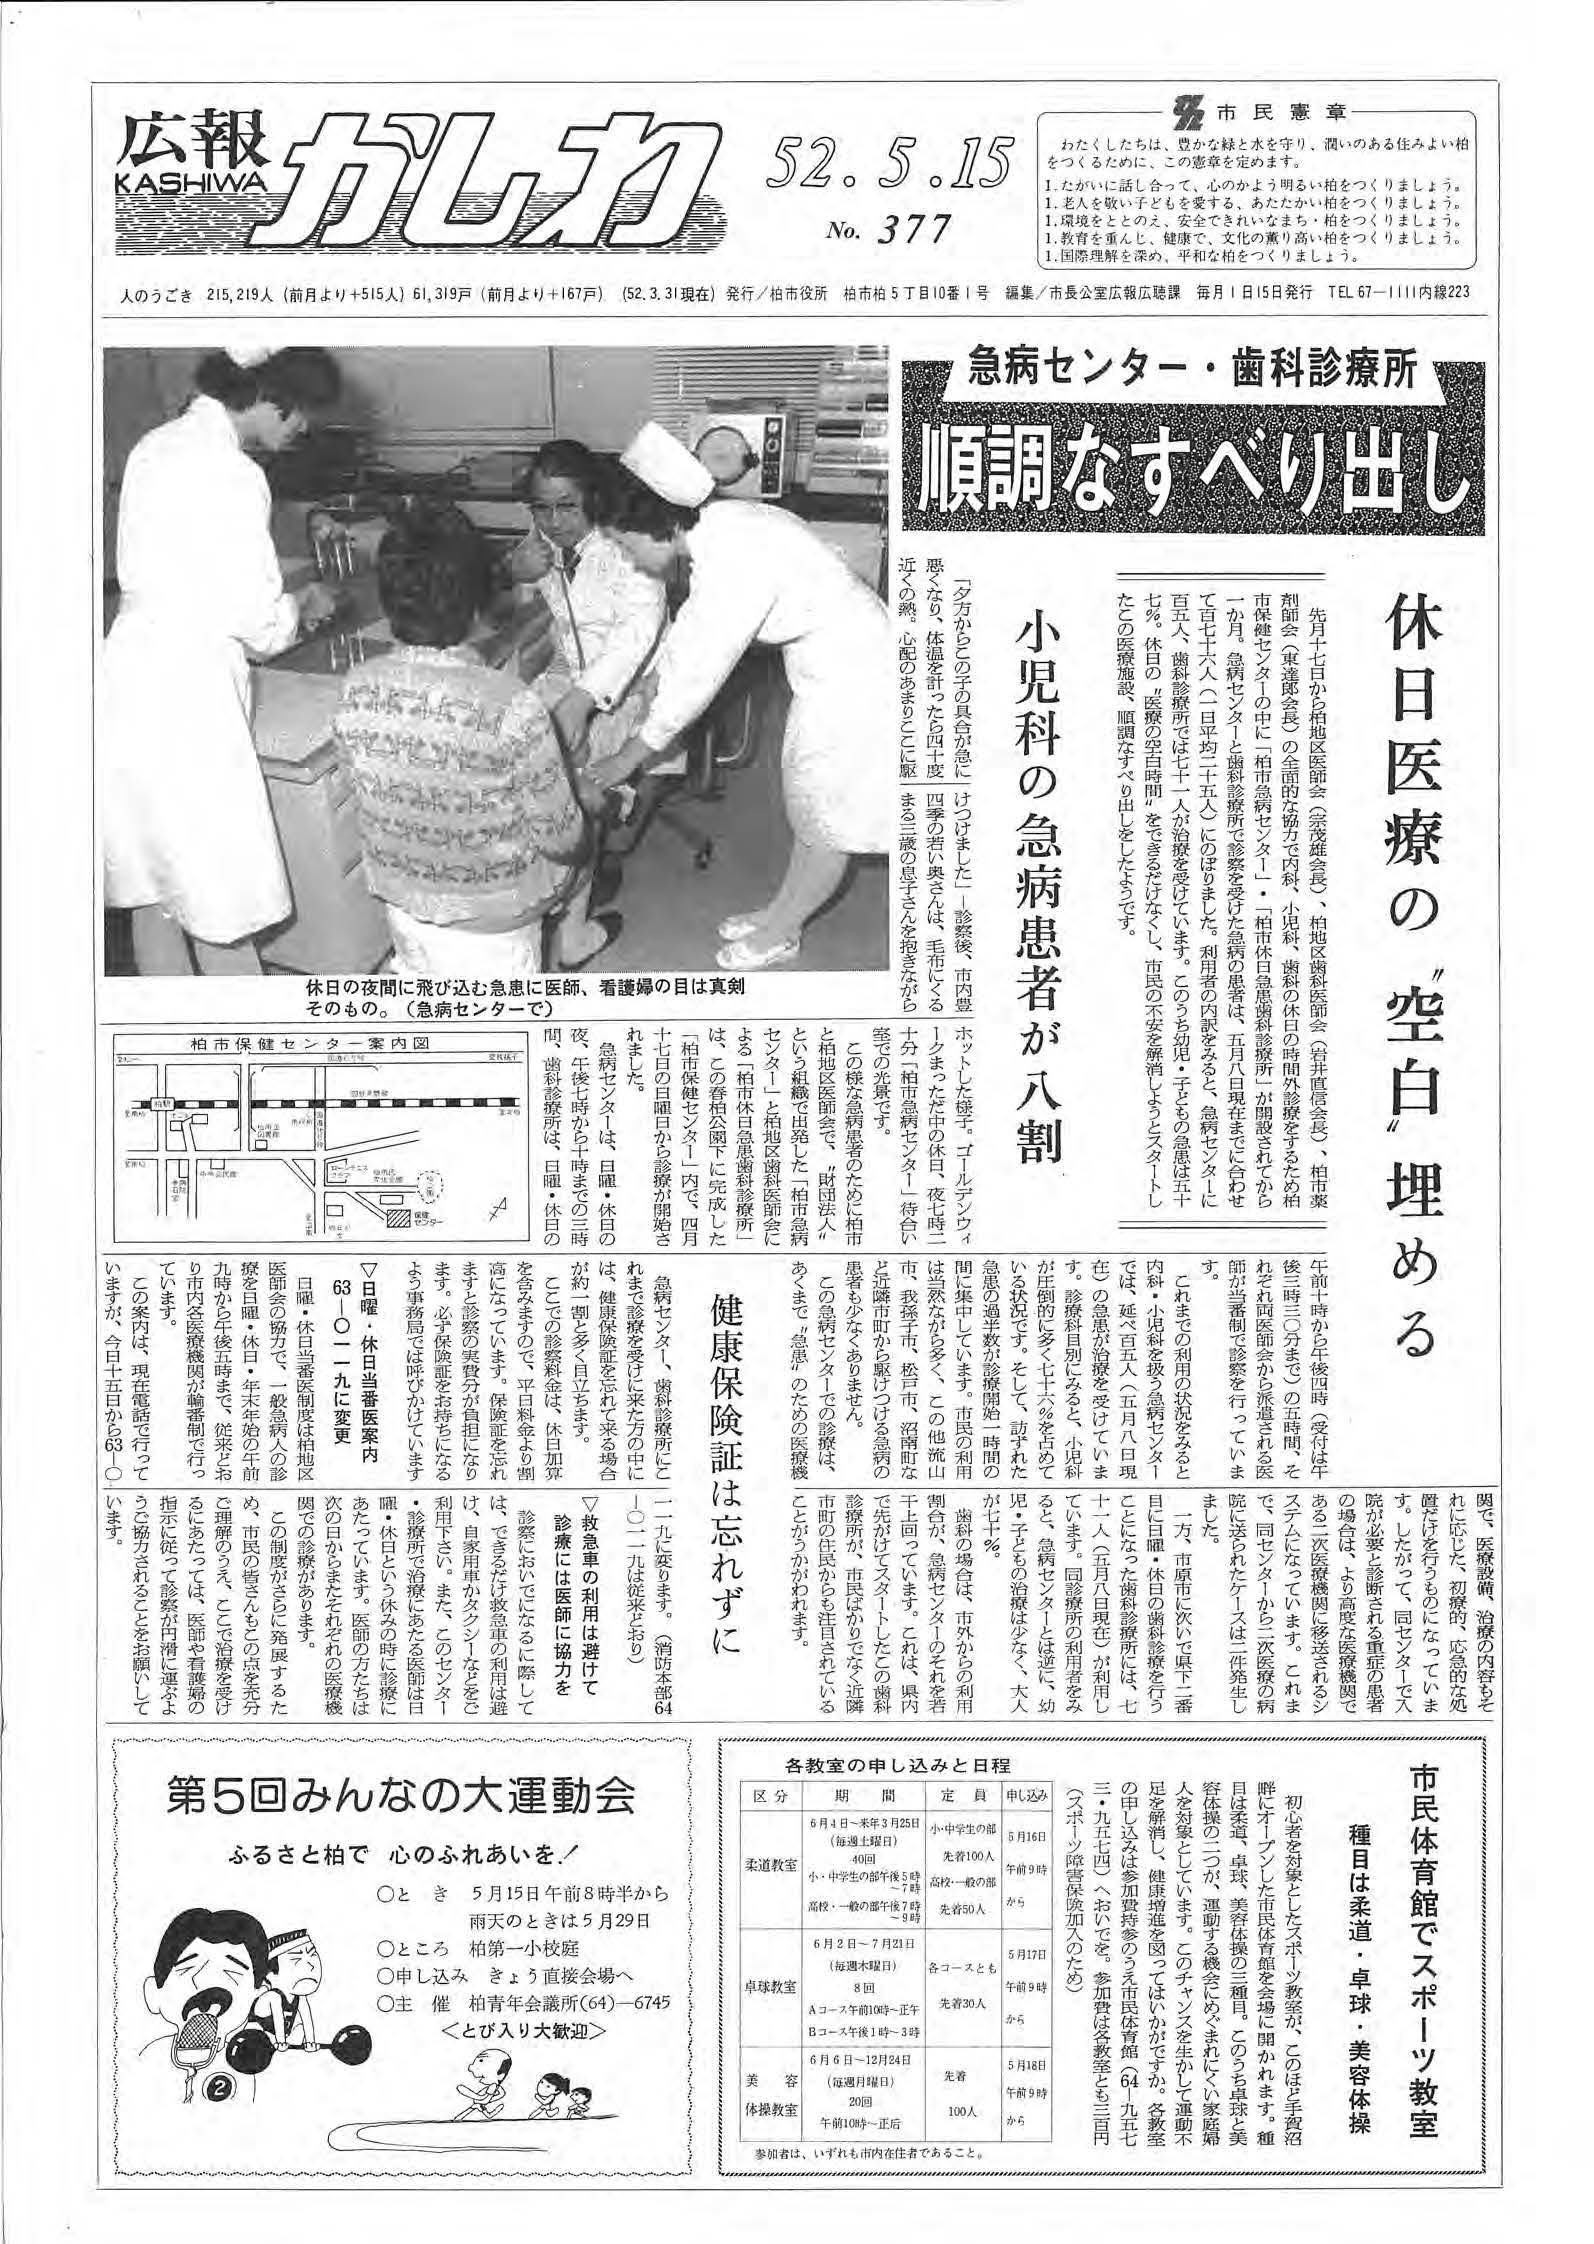 広報かしわ　昭和52年5月15日発行　377号